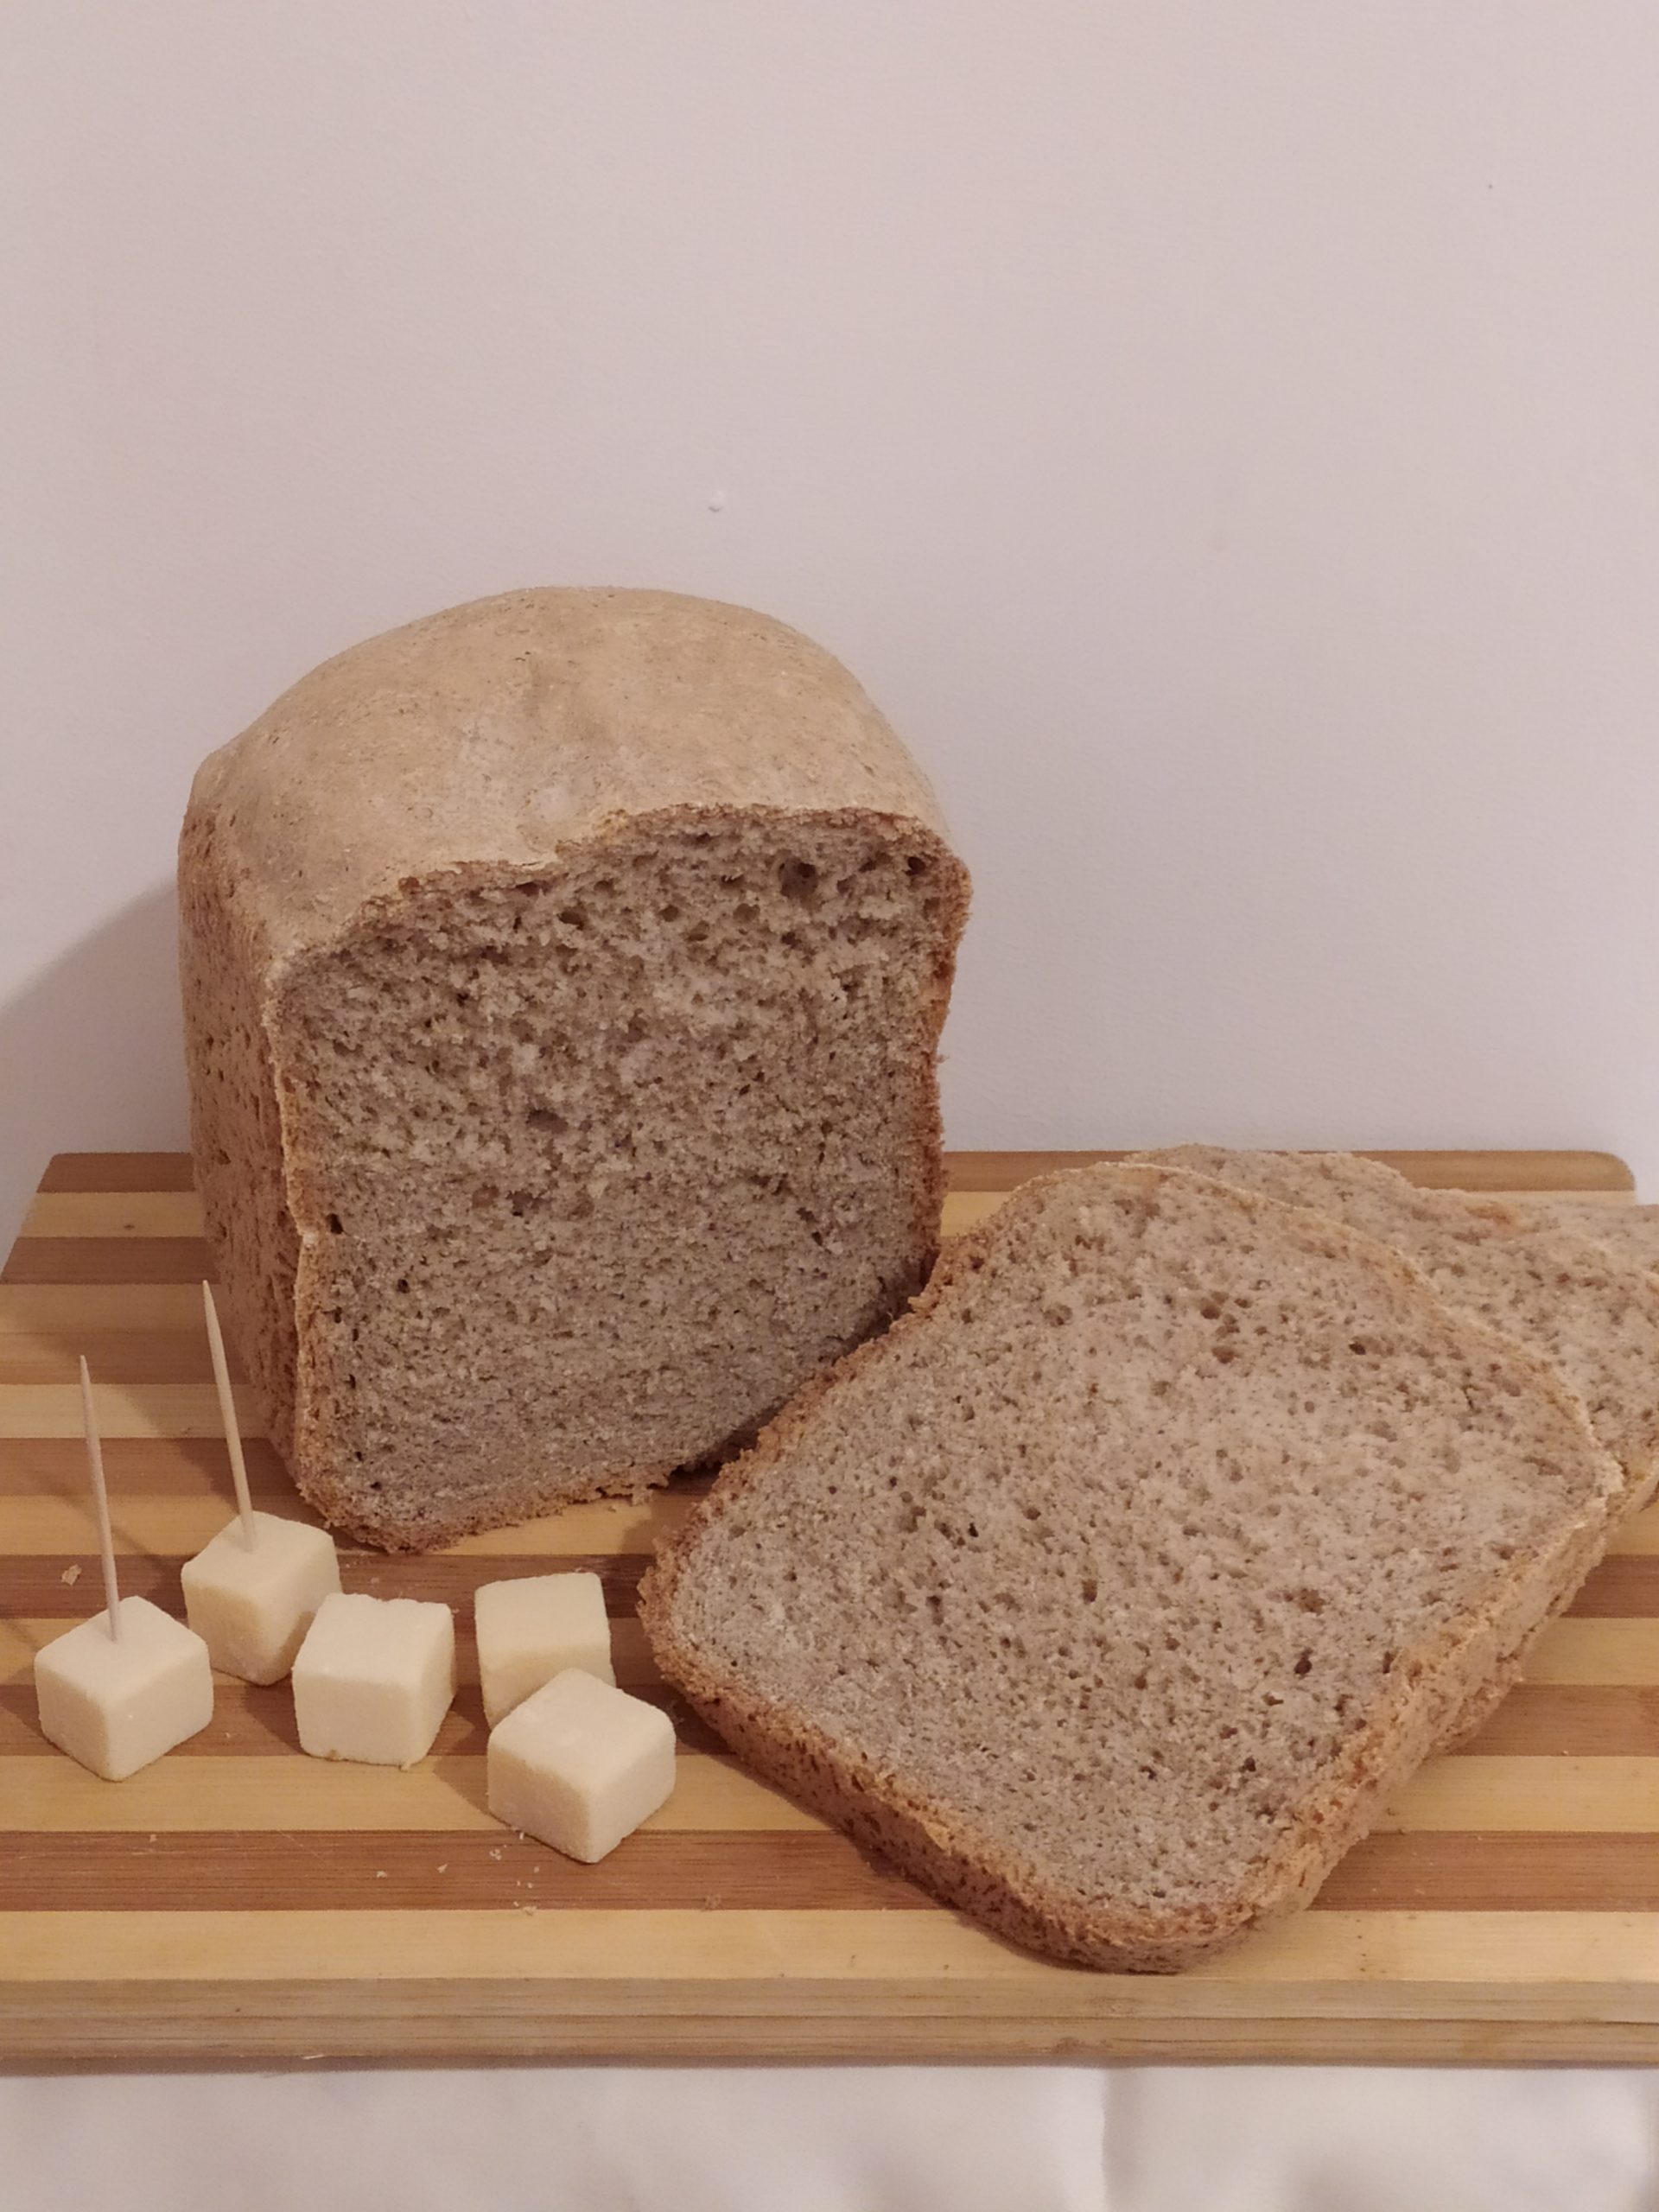 Pane integrale con macchina del pane - Cucina con Claudia